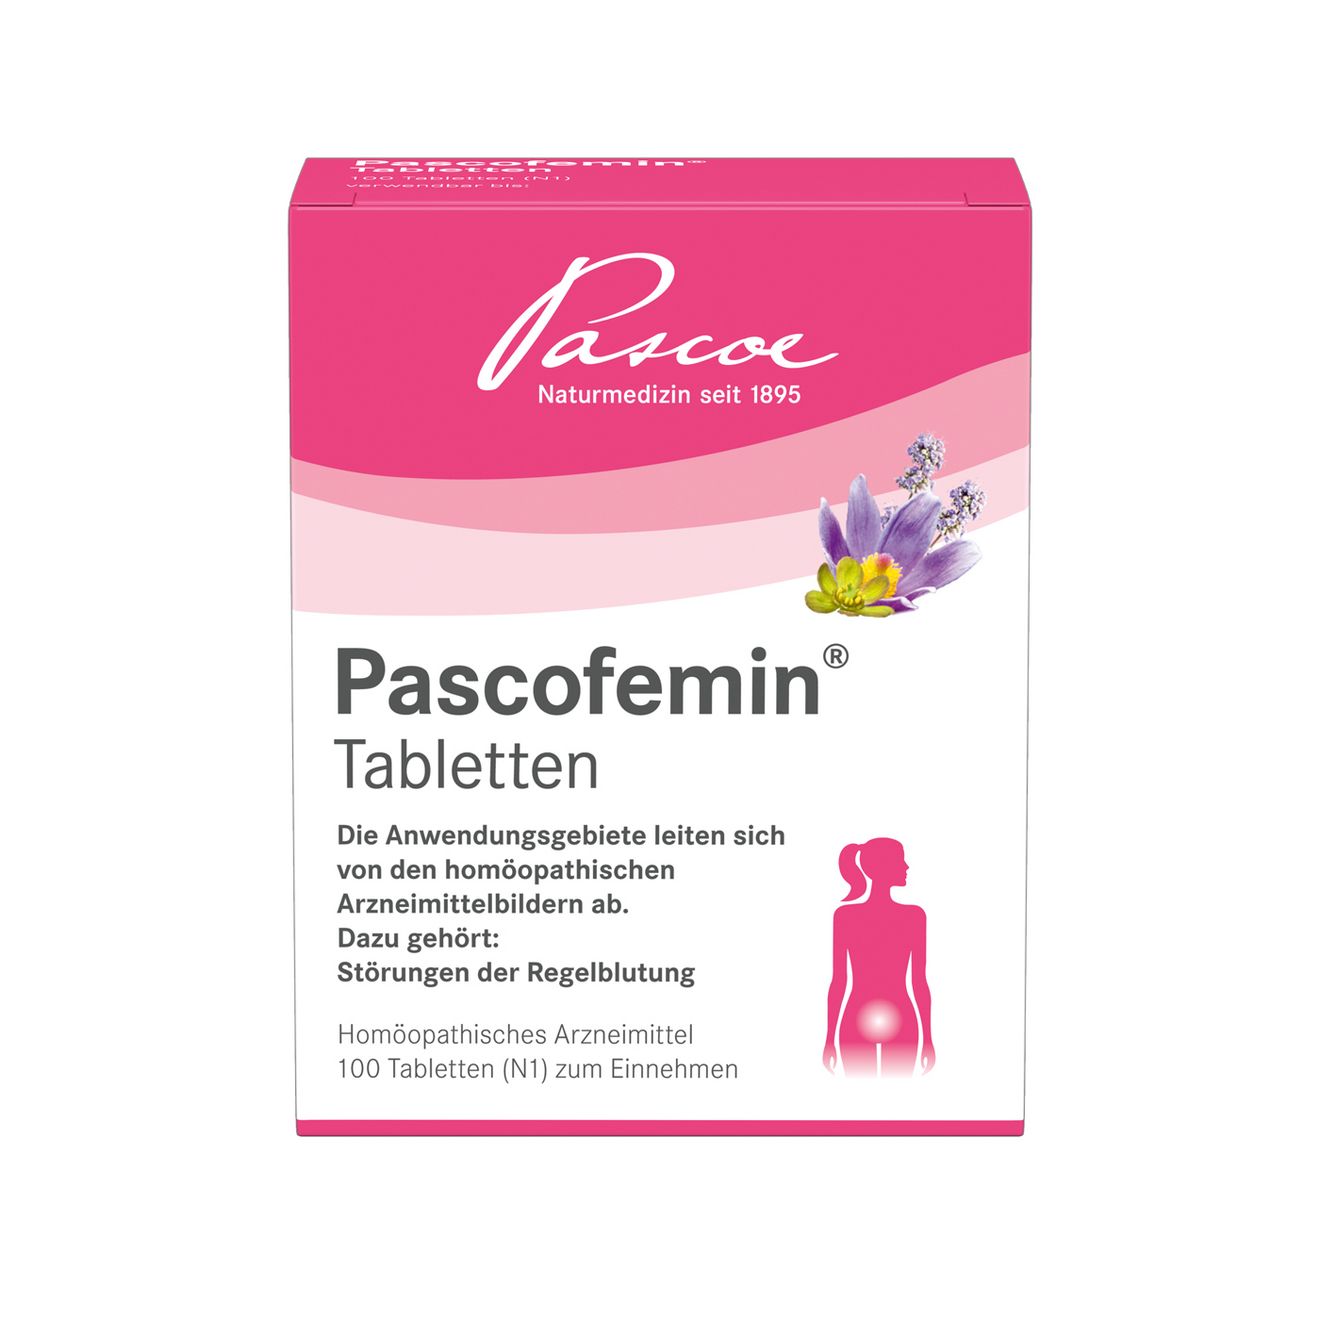 Pascofemin TablettenPascofemin Tabletten